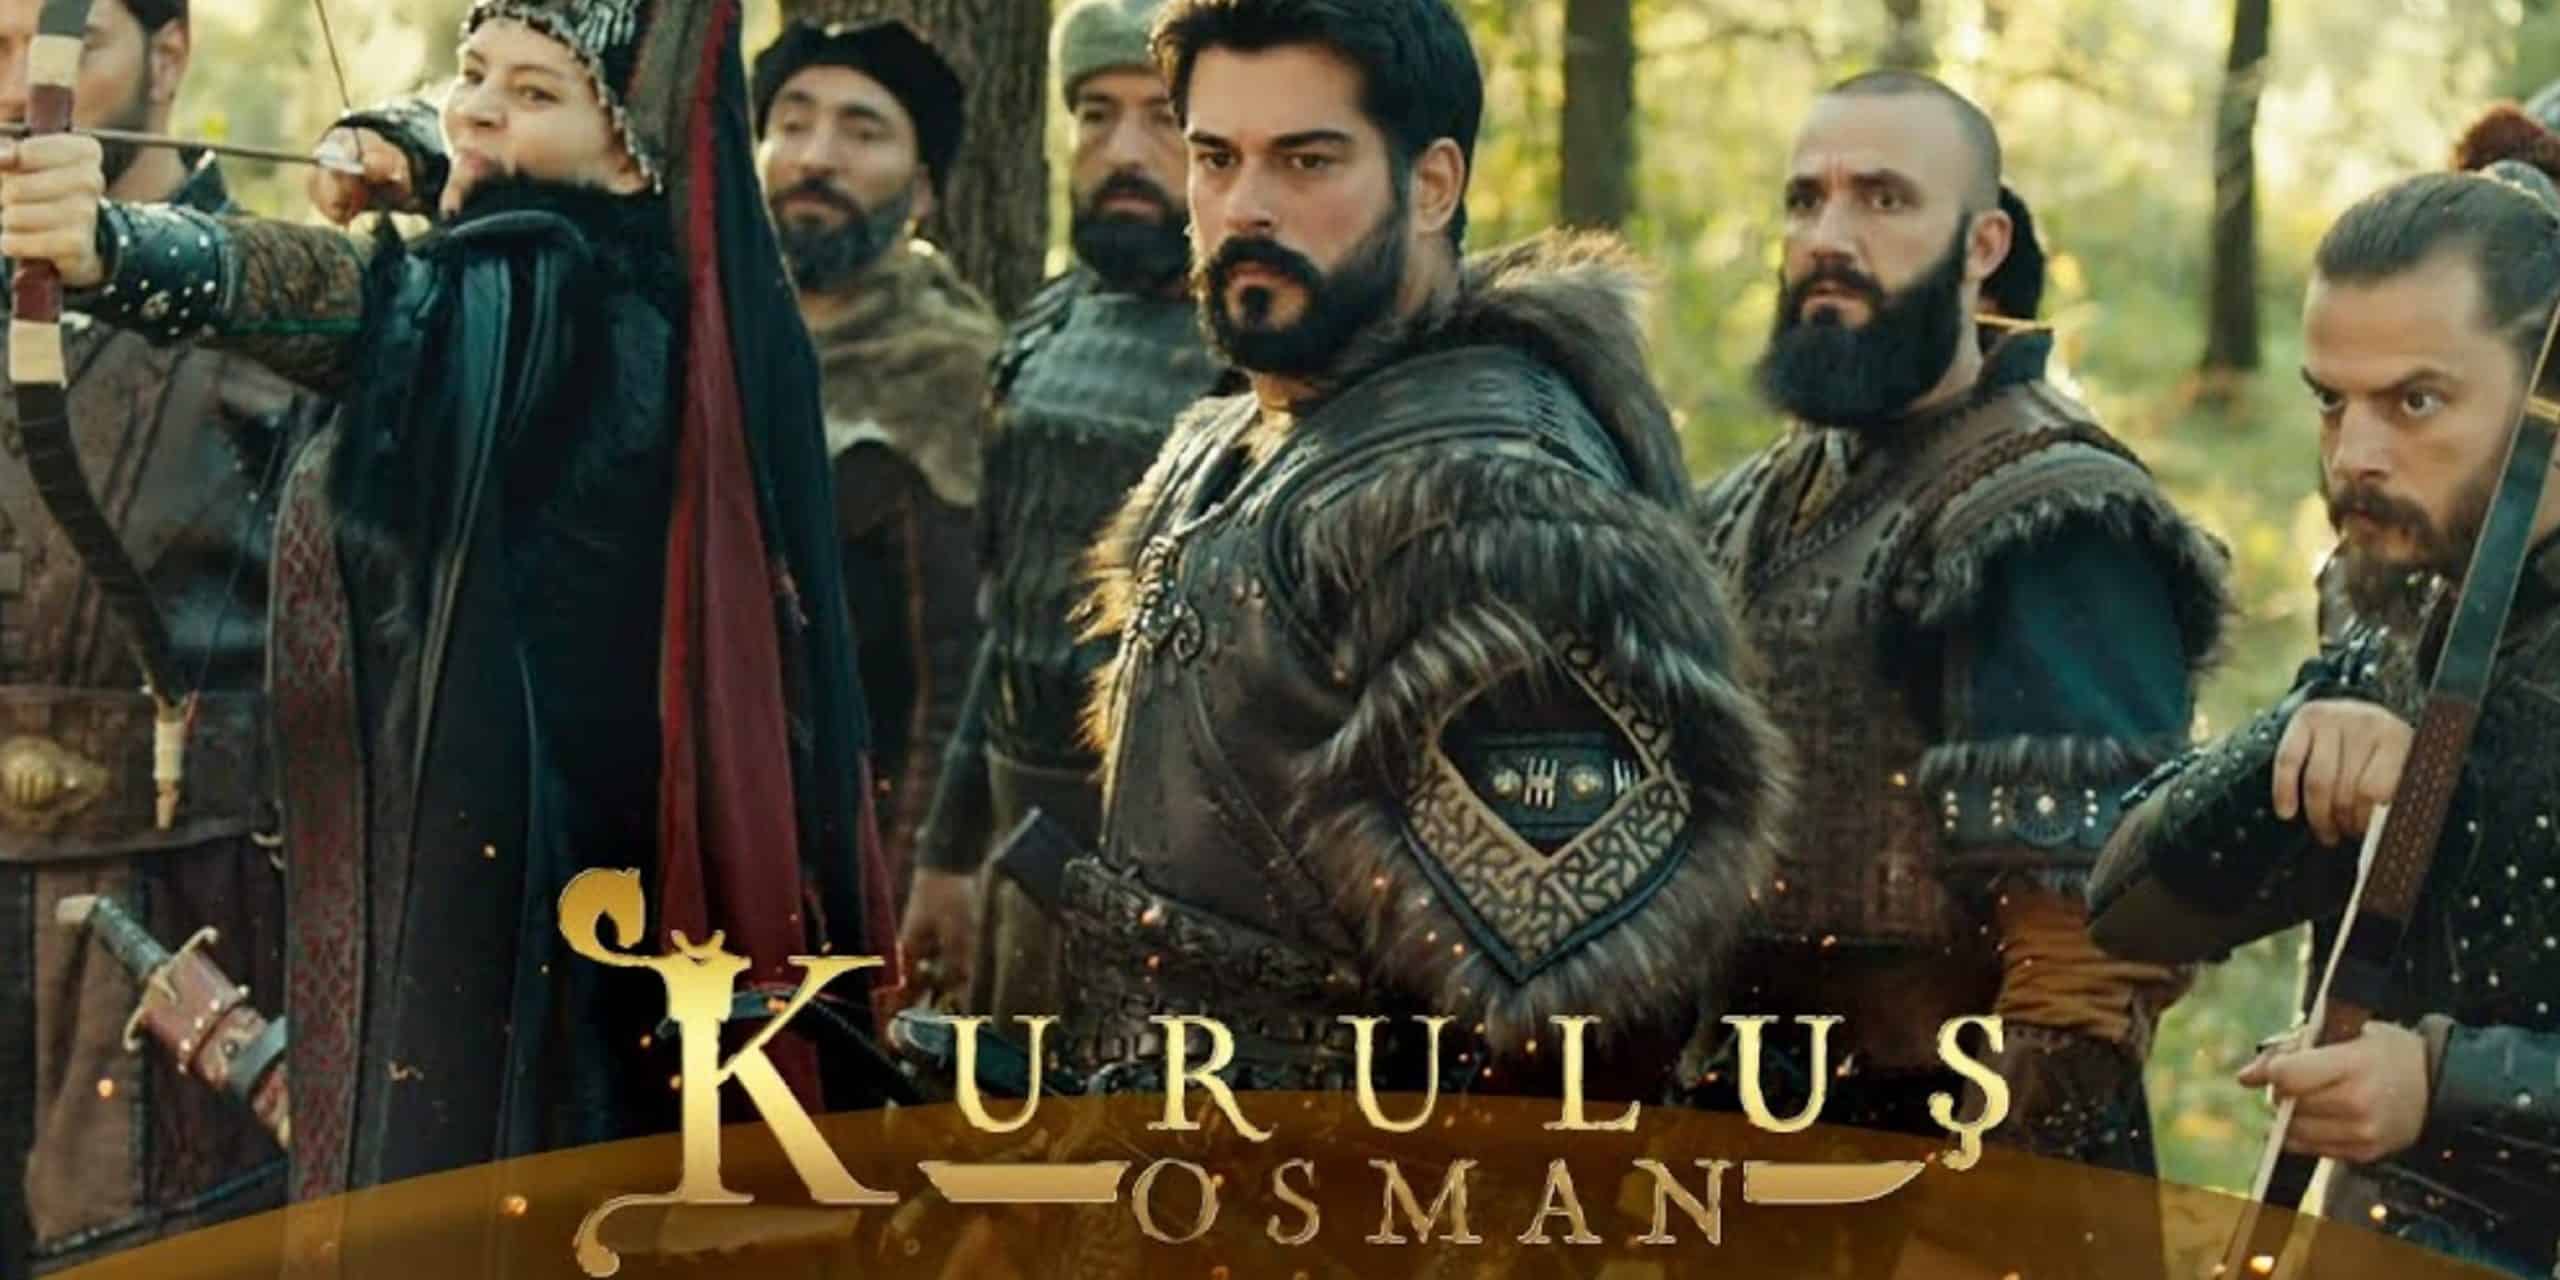 Kuruluş Osman Ottoman Empire Turkish Series Season 4 Episode 22 Synopsis